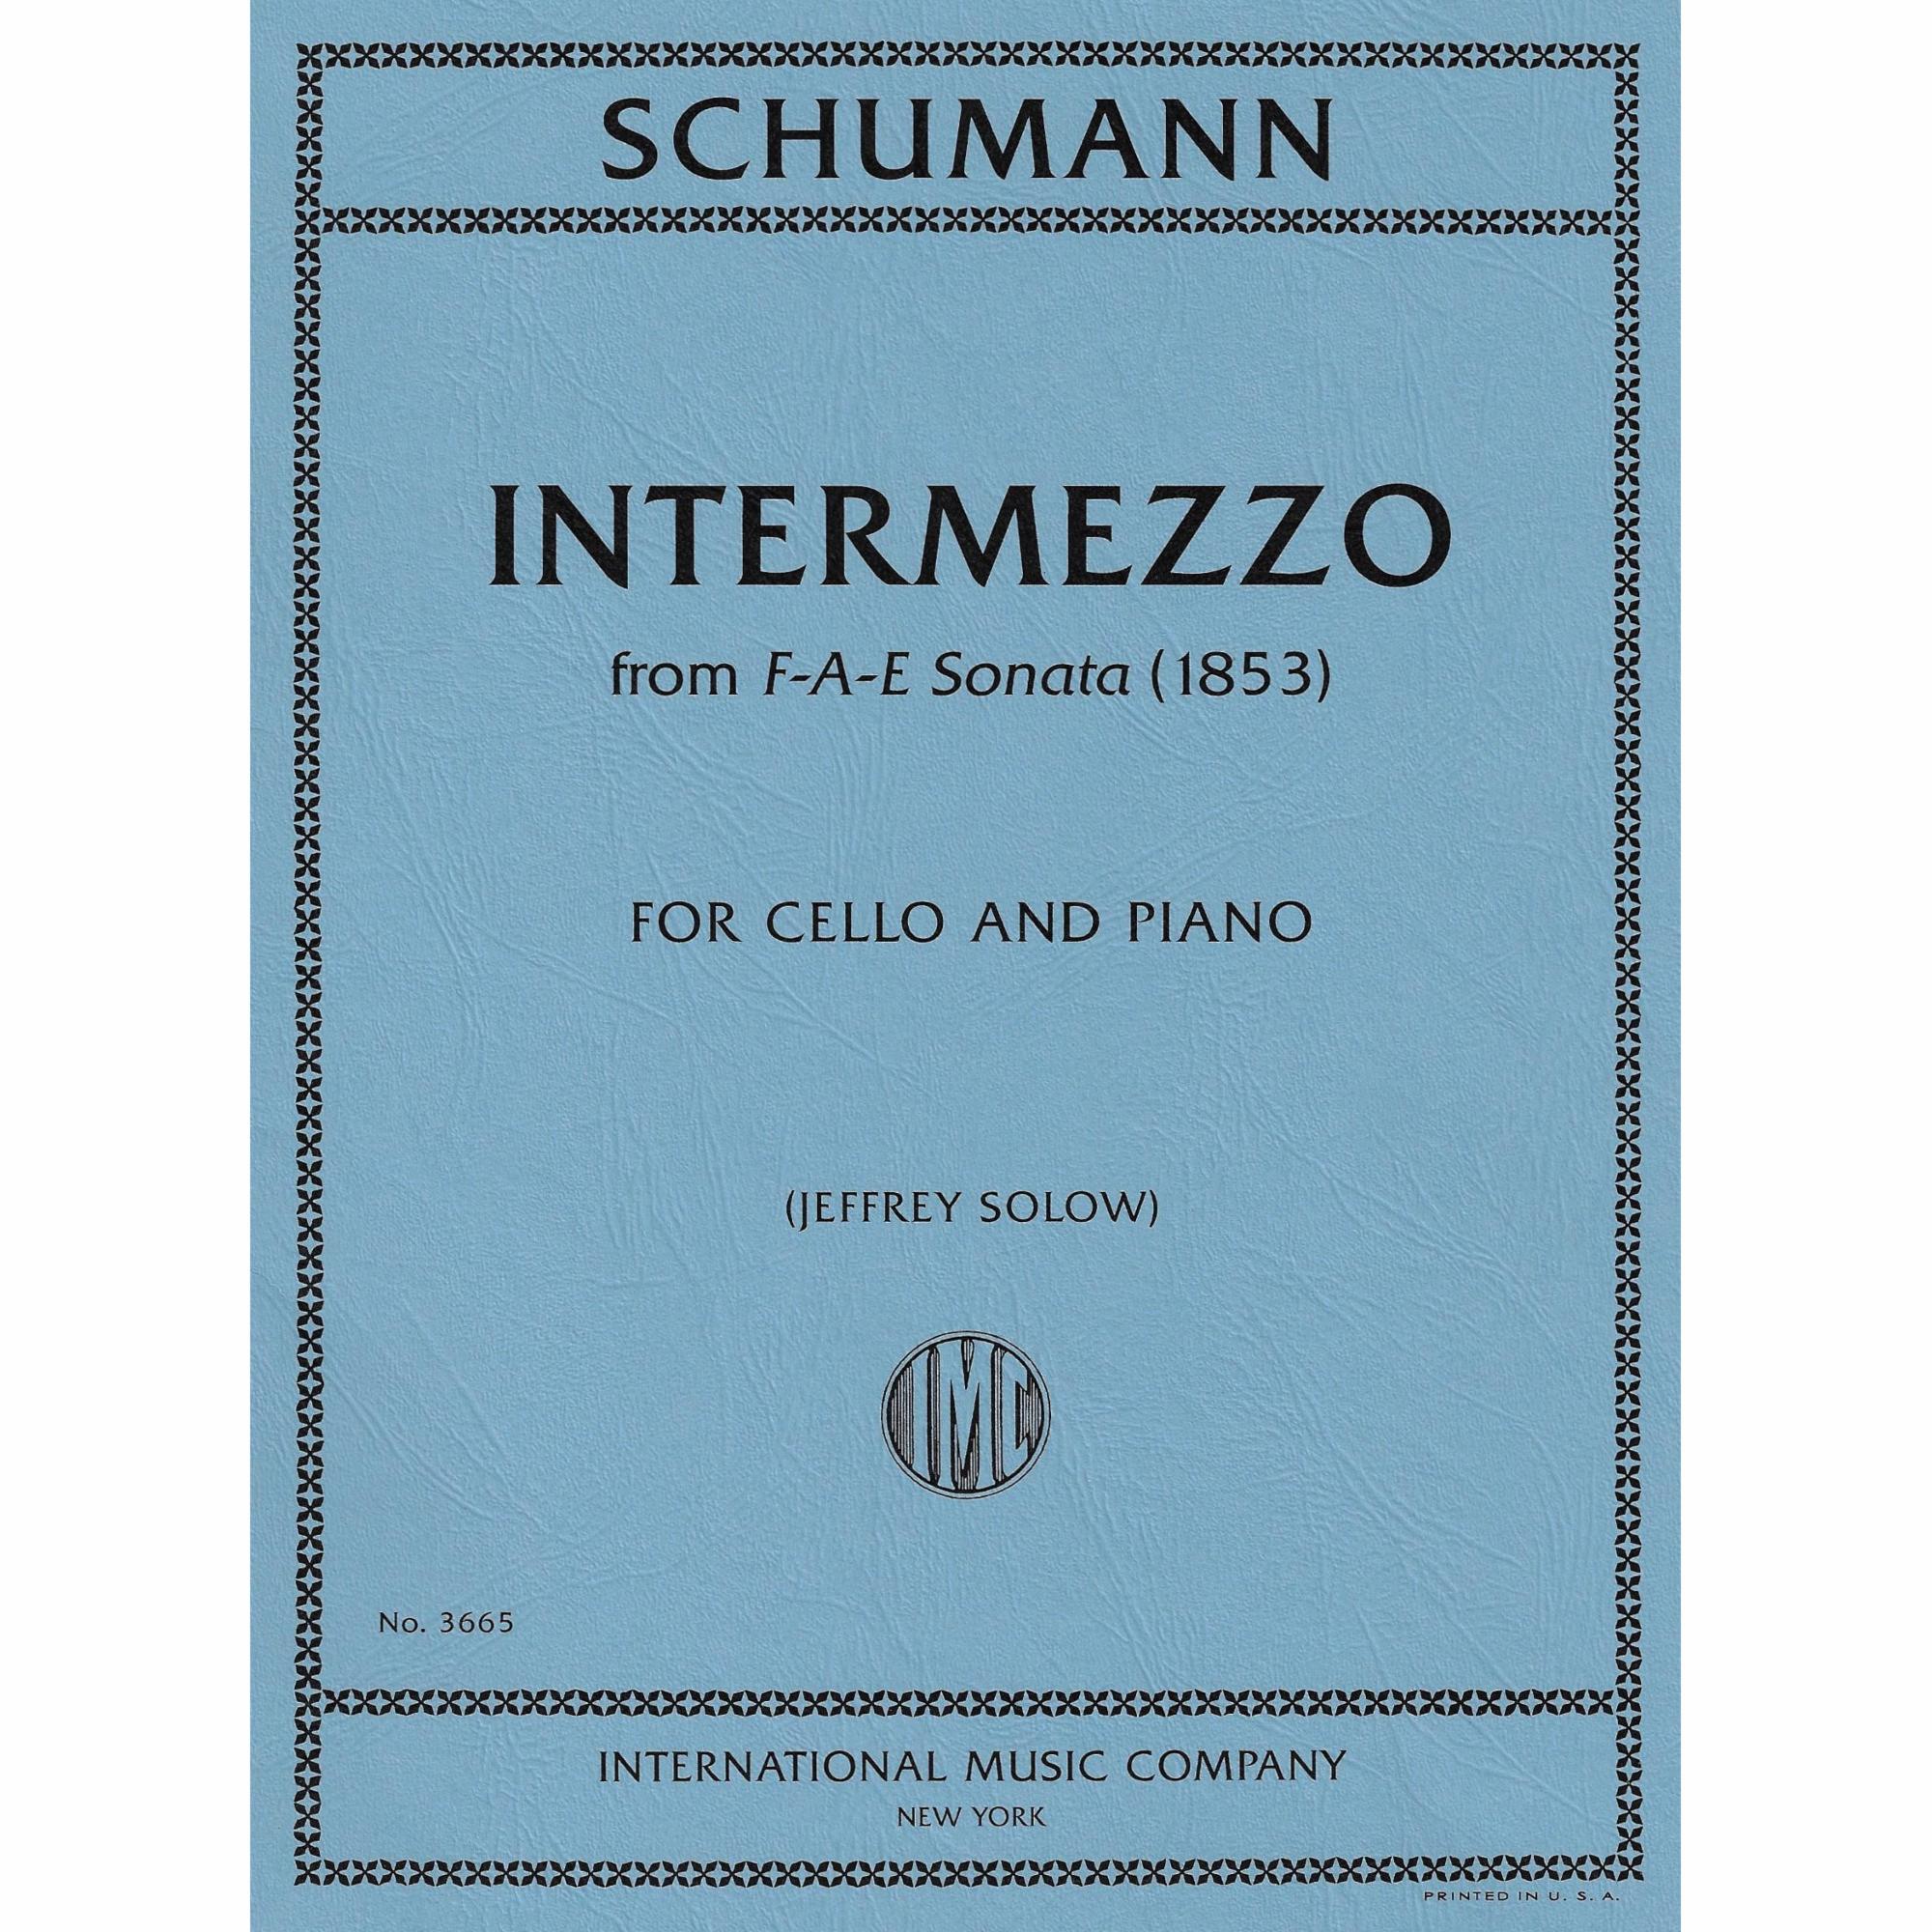 Intermezzo (from the F-A-E Sonata) for Cello and Piano